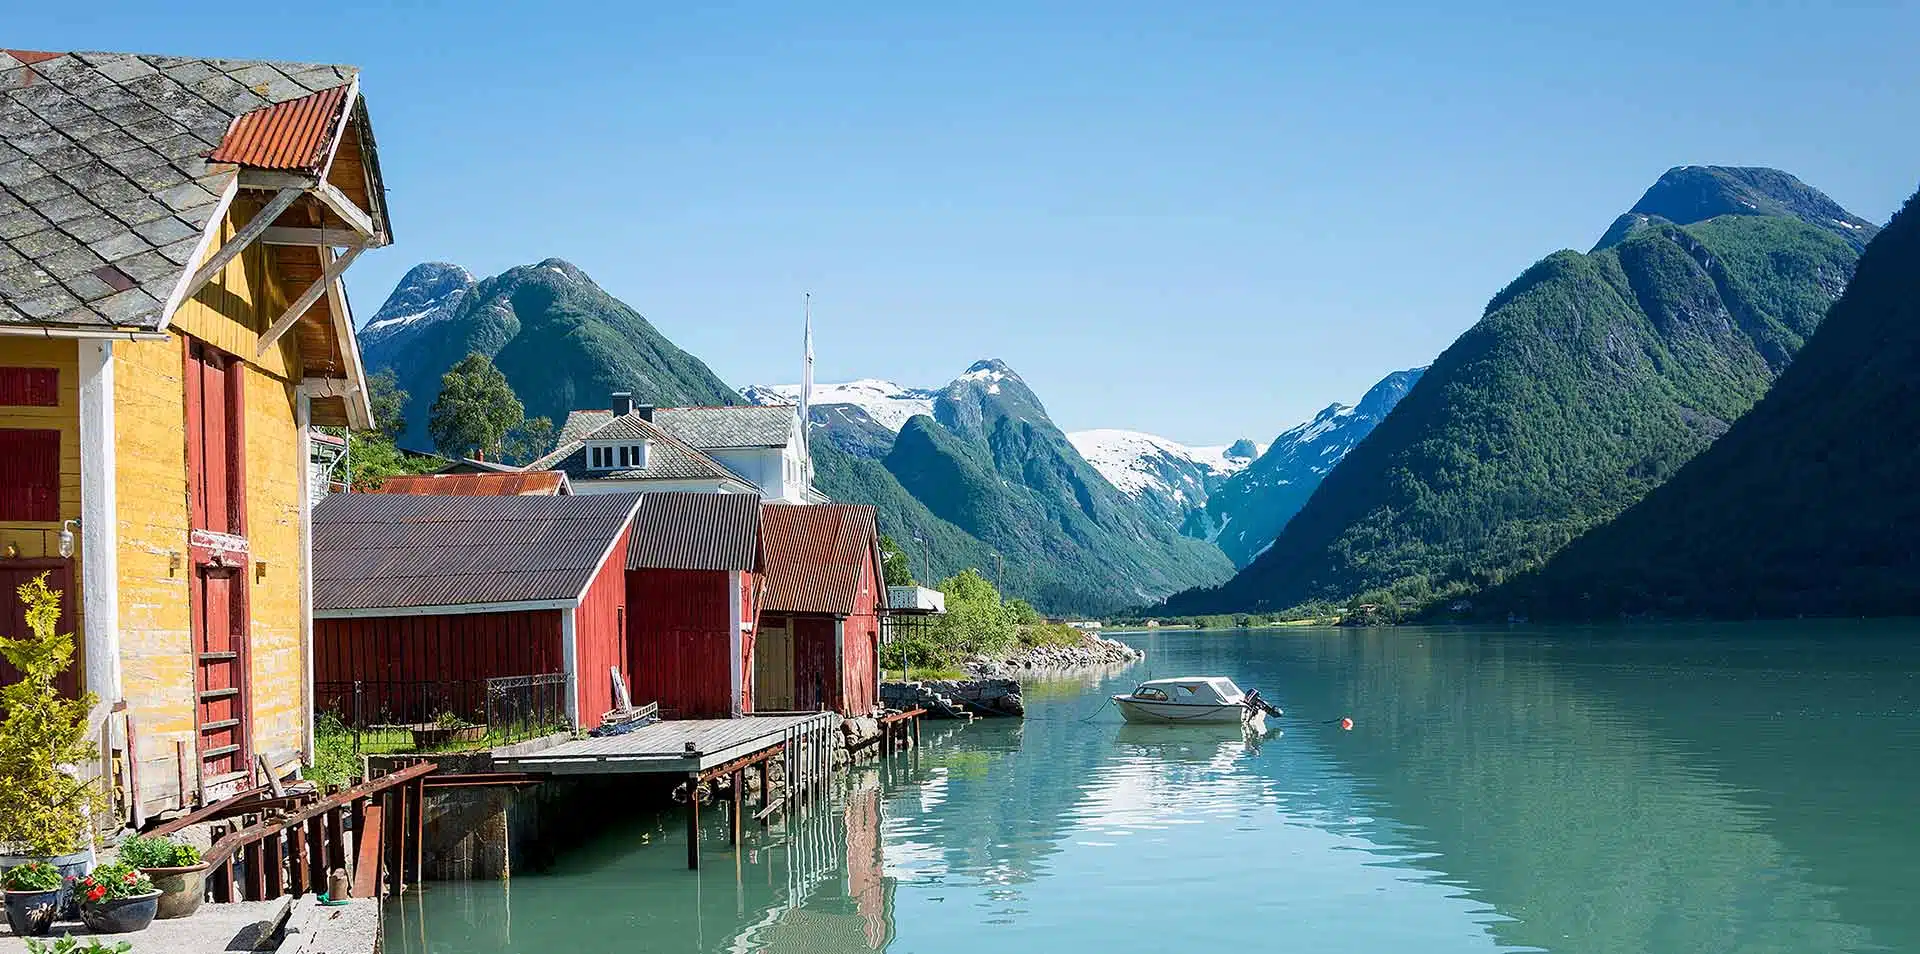 Village Alongside Fjord in Norway